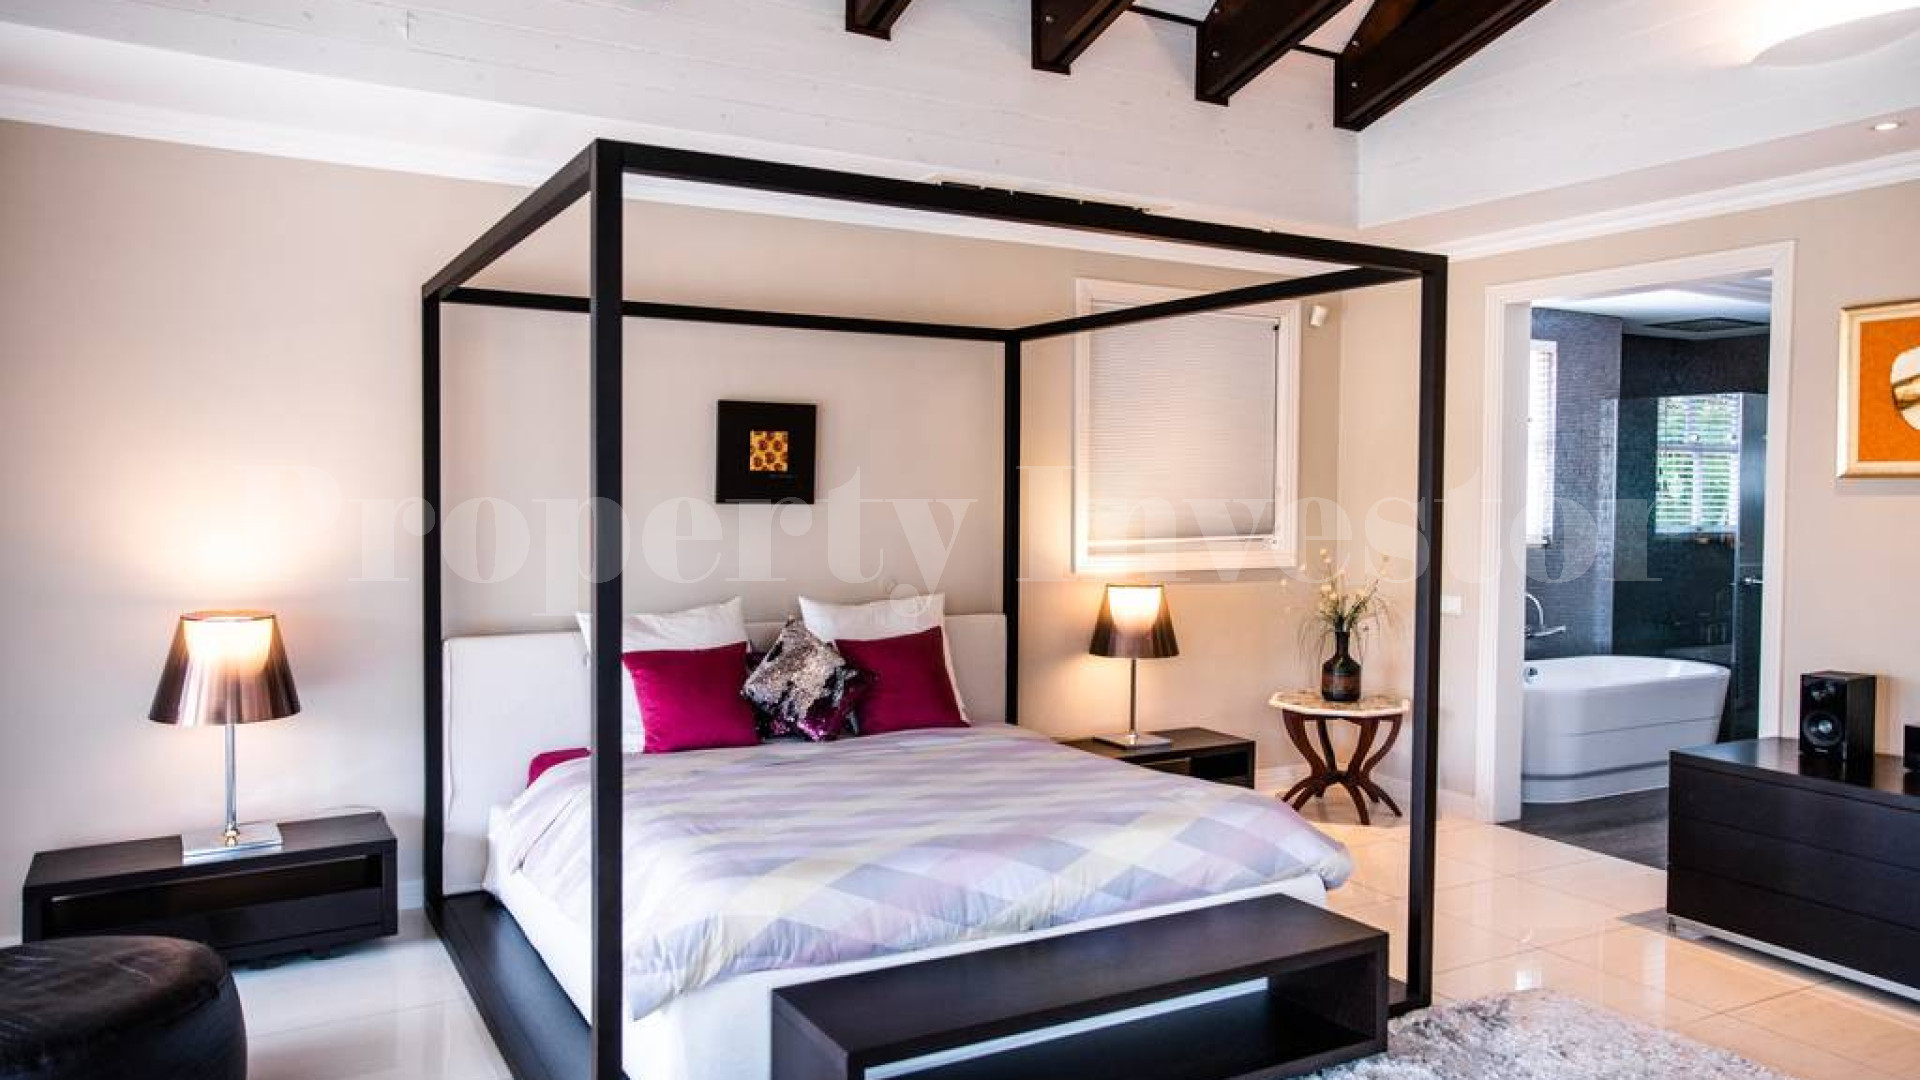 Современная роскошная частная дизайнерская вилла на 5 спален на берегу океана на о.Иден, Сейшелы